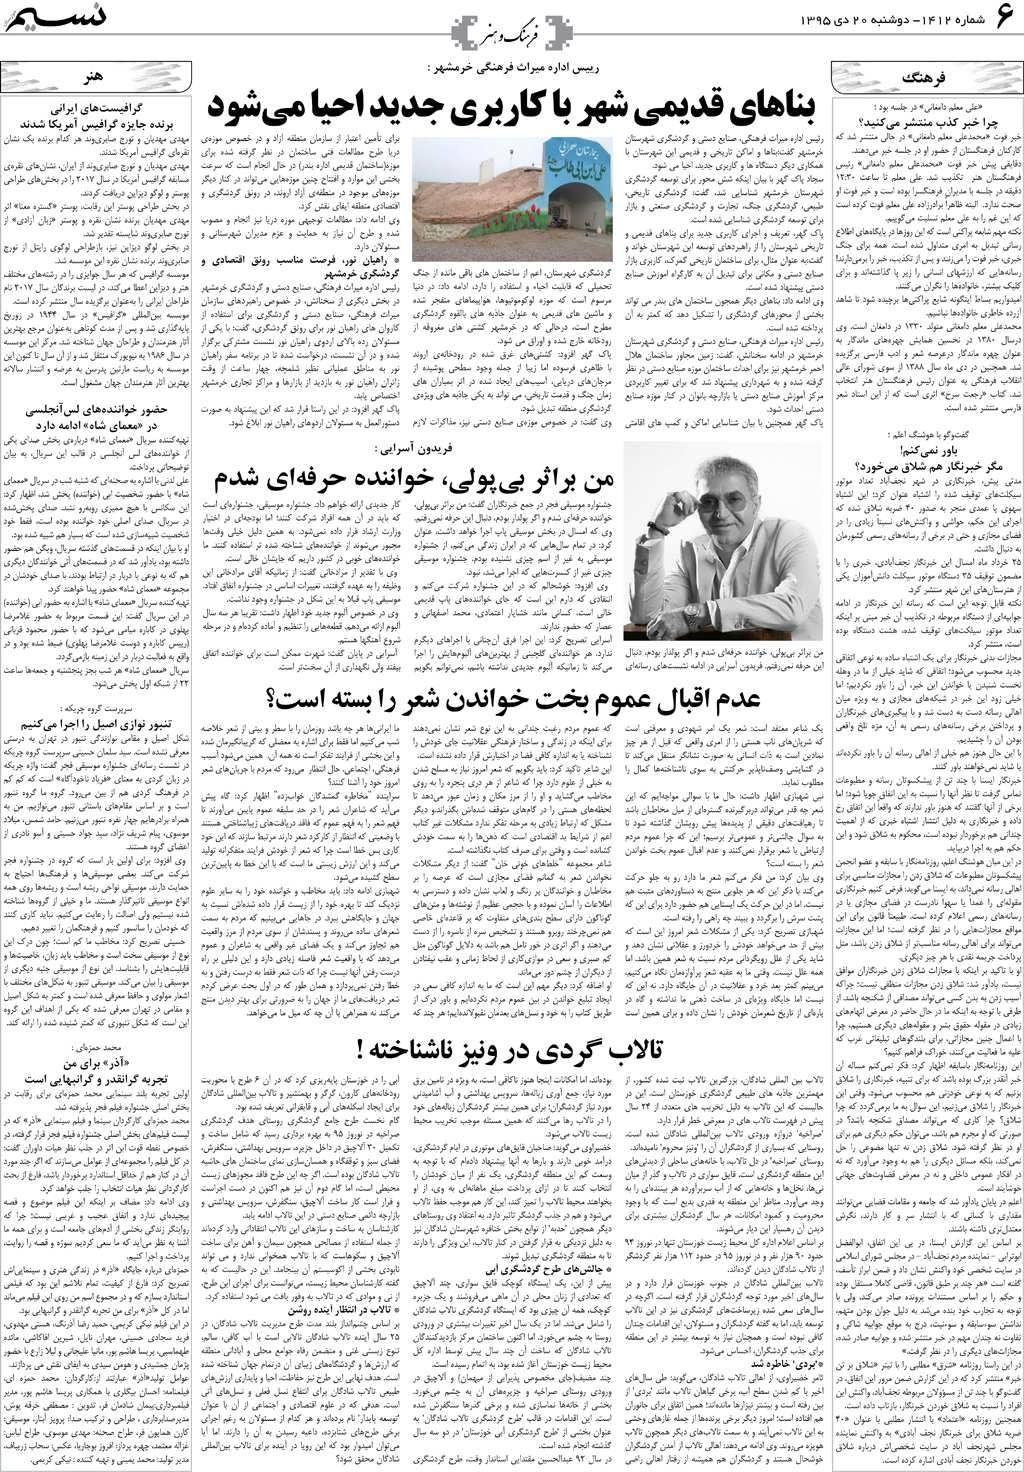 صفحه فرهنگ و هنر روزنامه نسیم شماره 1412